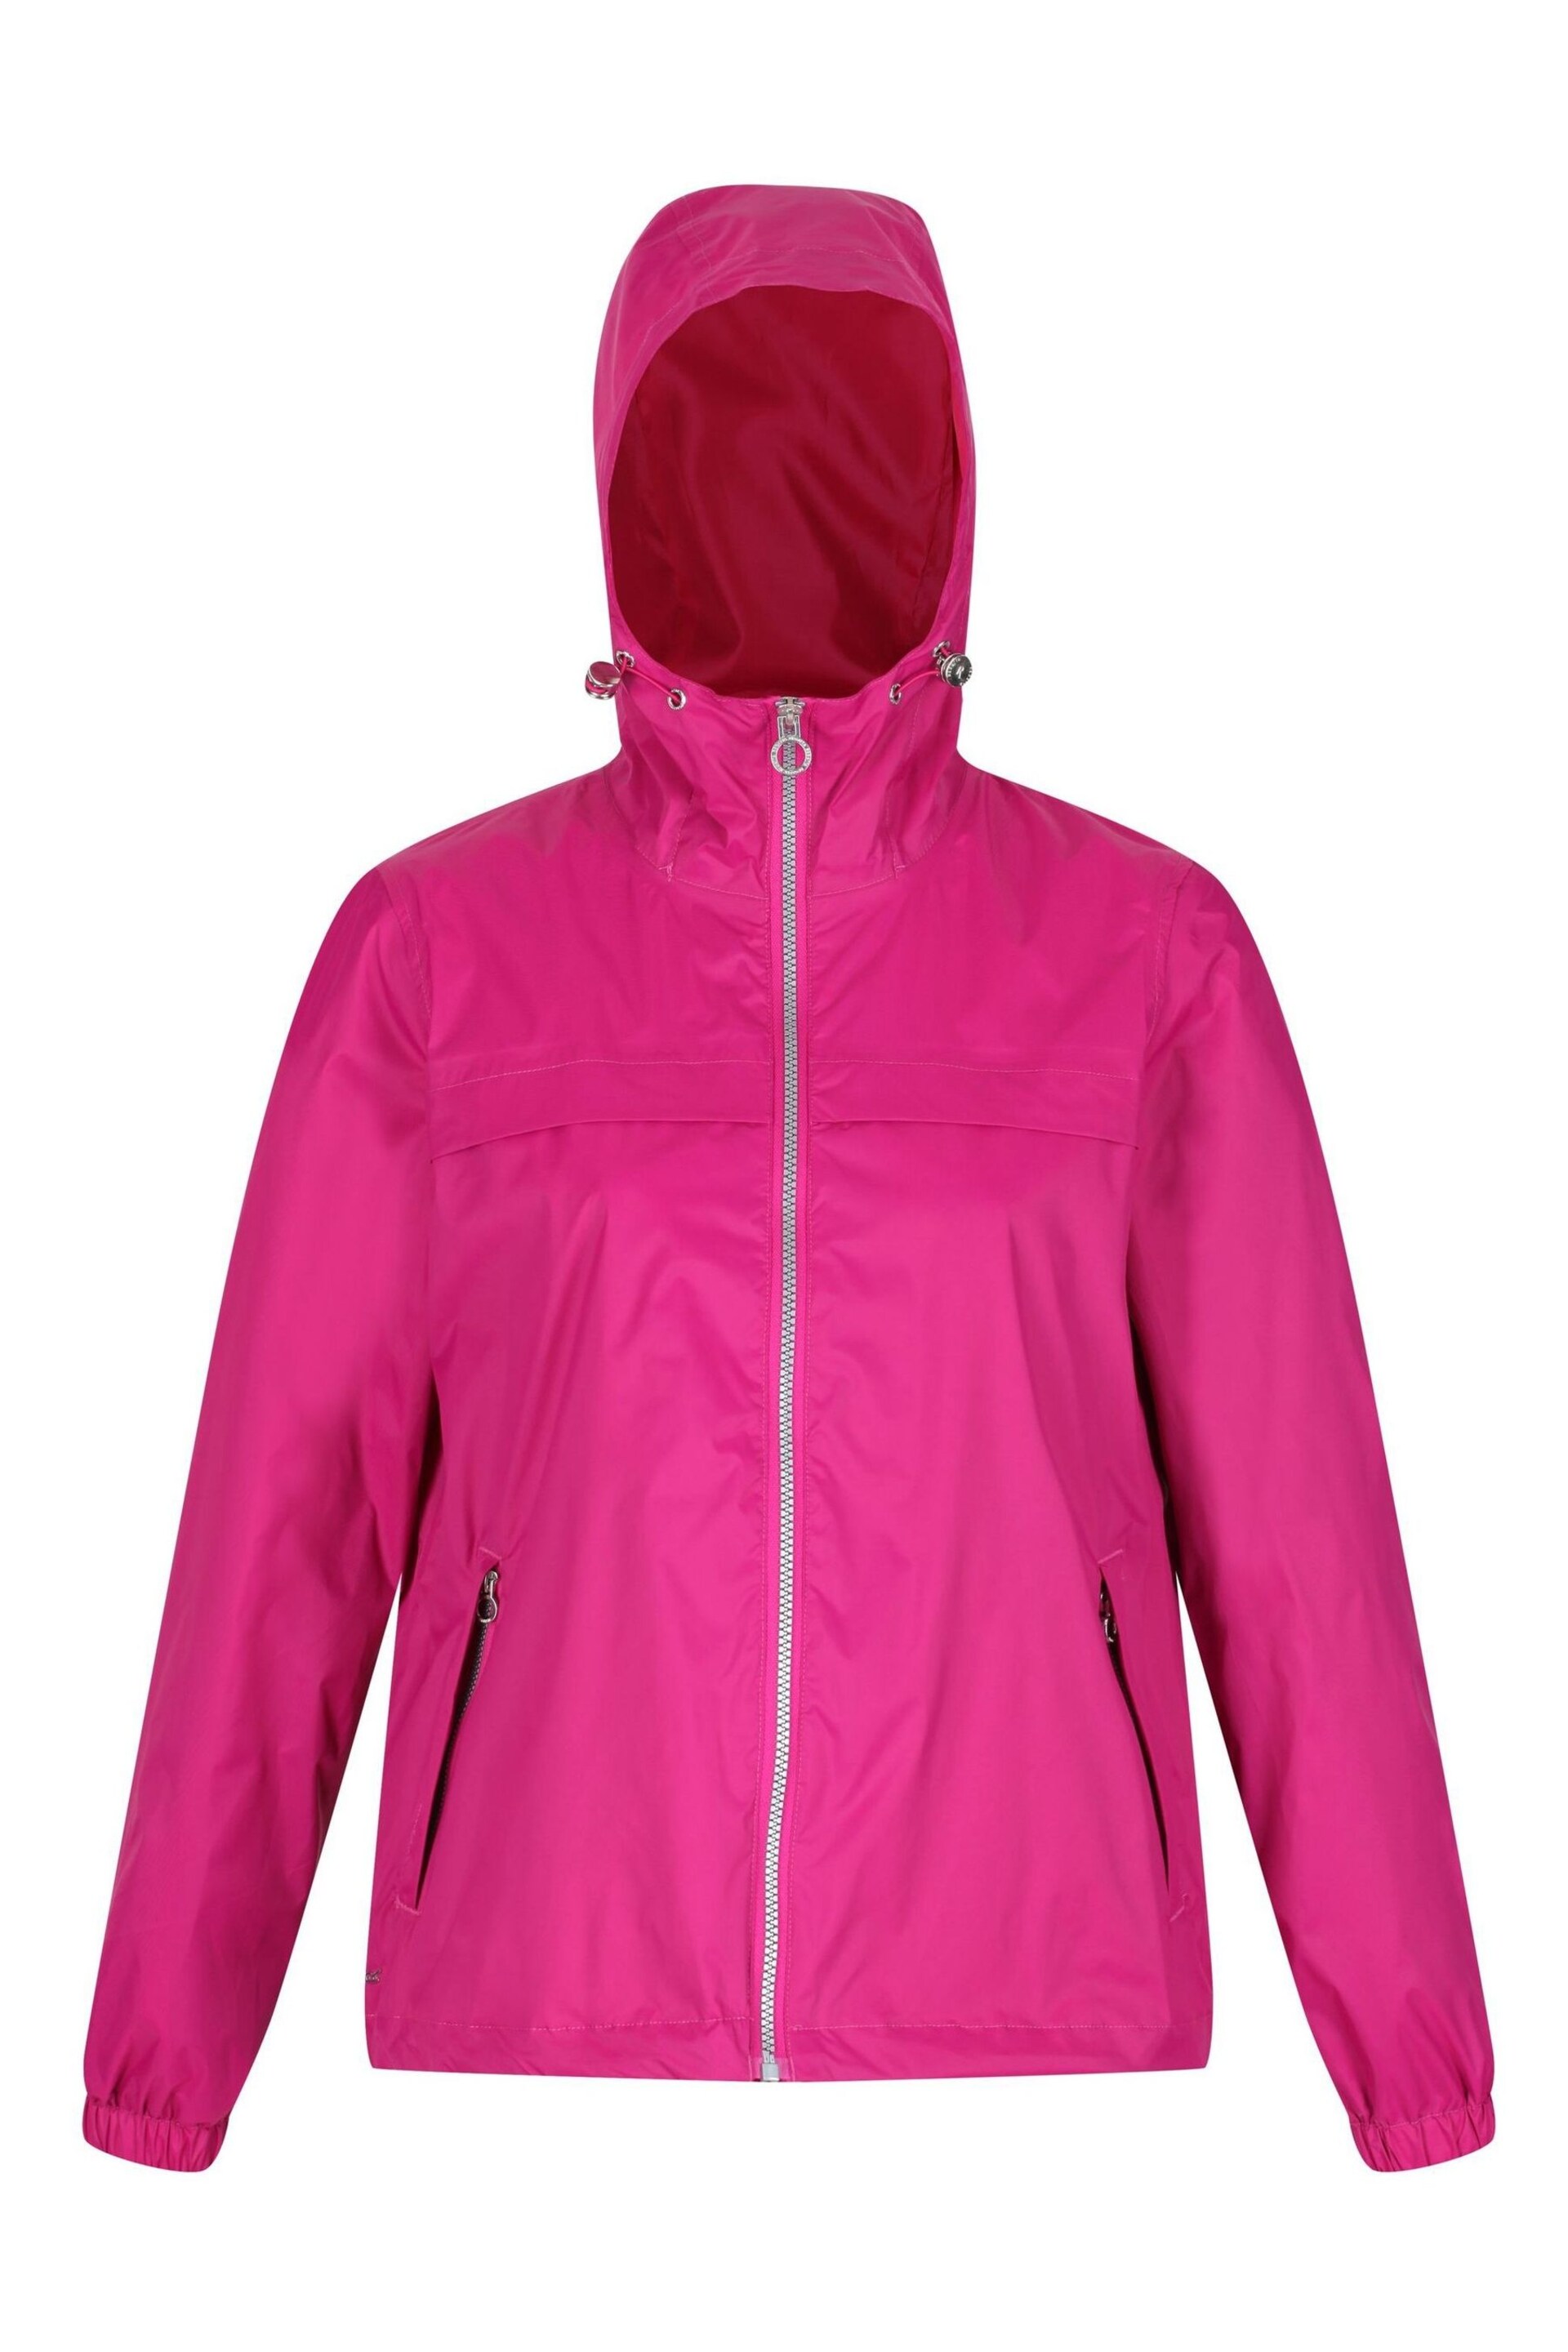 Regatta Pink Lalita Waterproof Jacket - Image 7 of 10